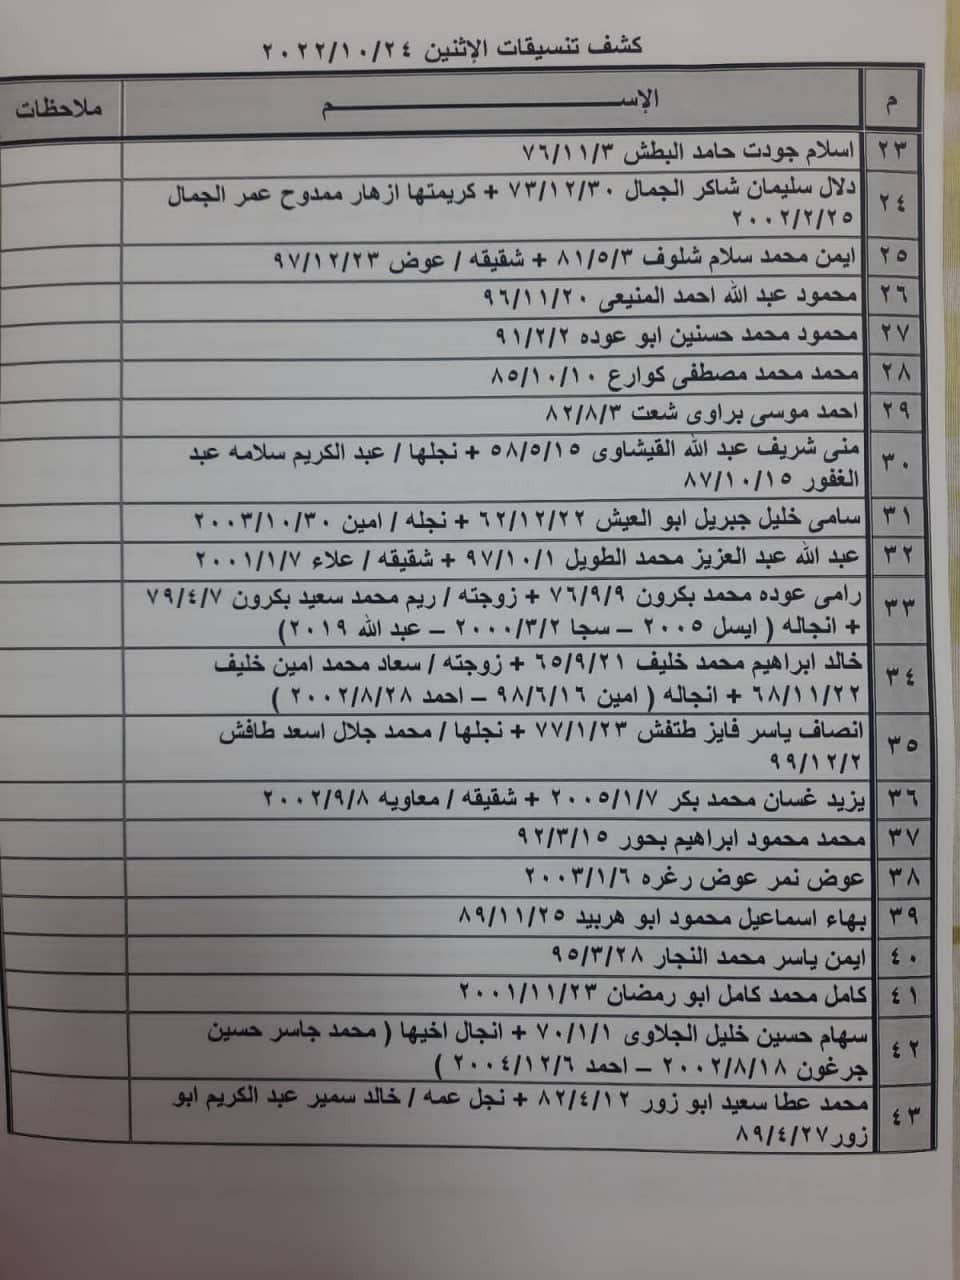 بالأسماء: كشف "تنسيقات مصرية" للسفر عبر معبر رفح يوم الإثنين 24 أكتوبر